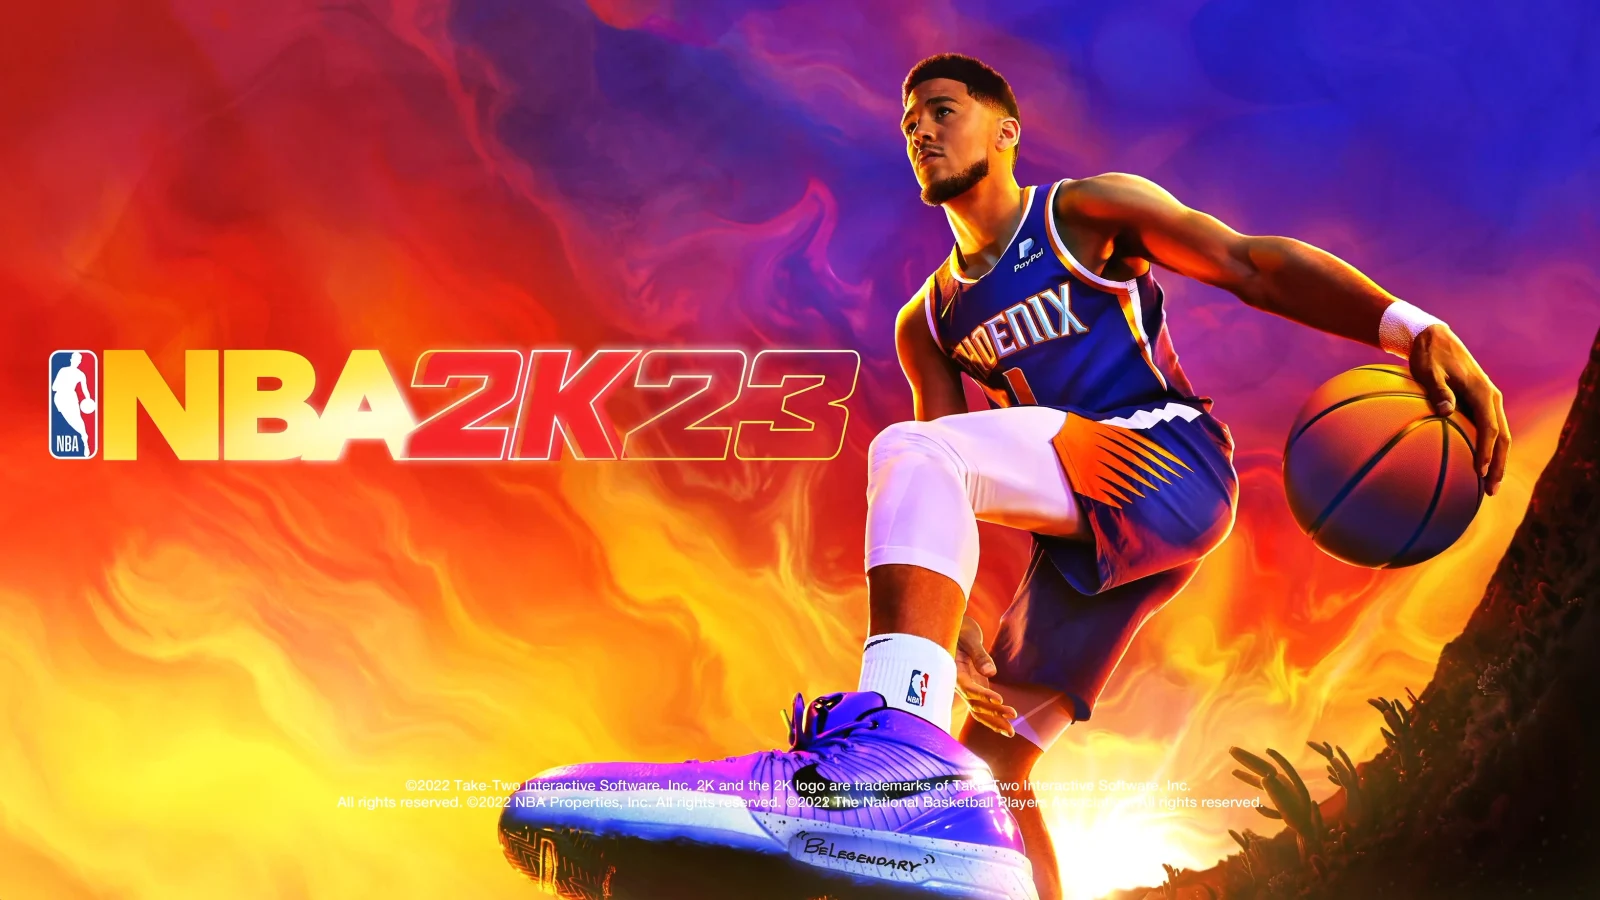 《NBA 2K23》其他版本封面球星将由德文·布克担任